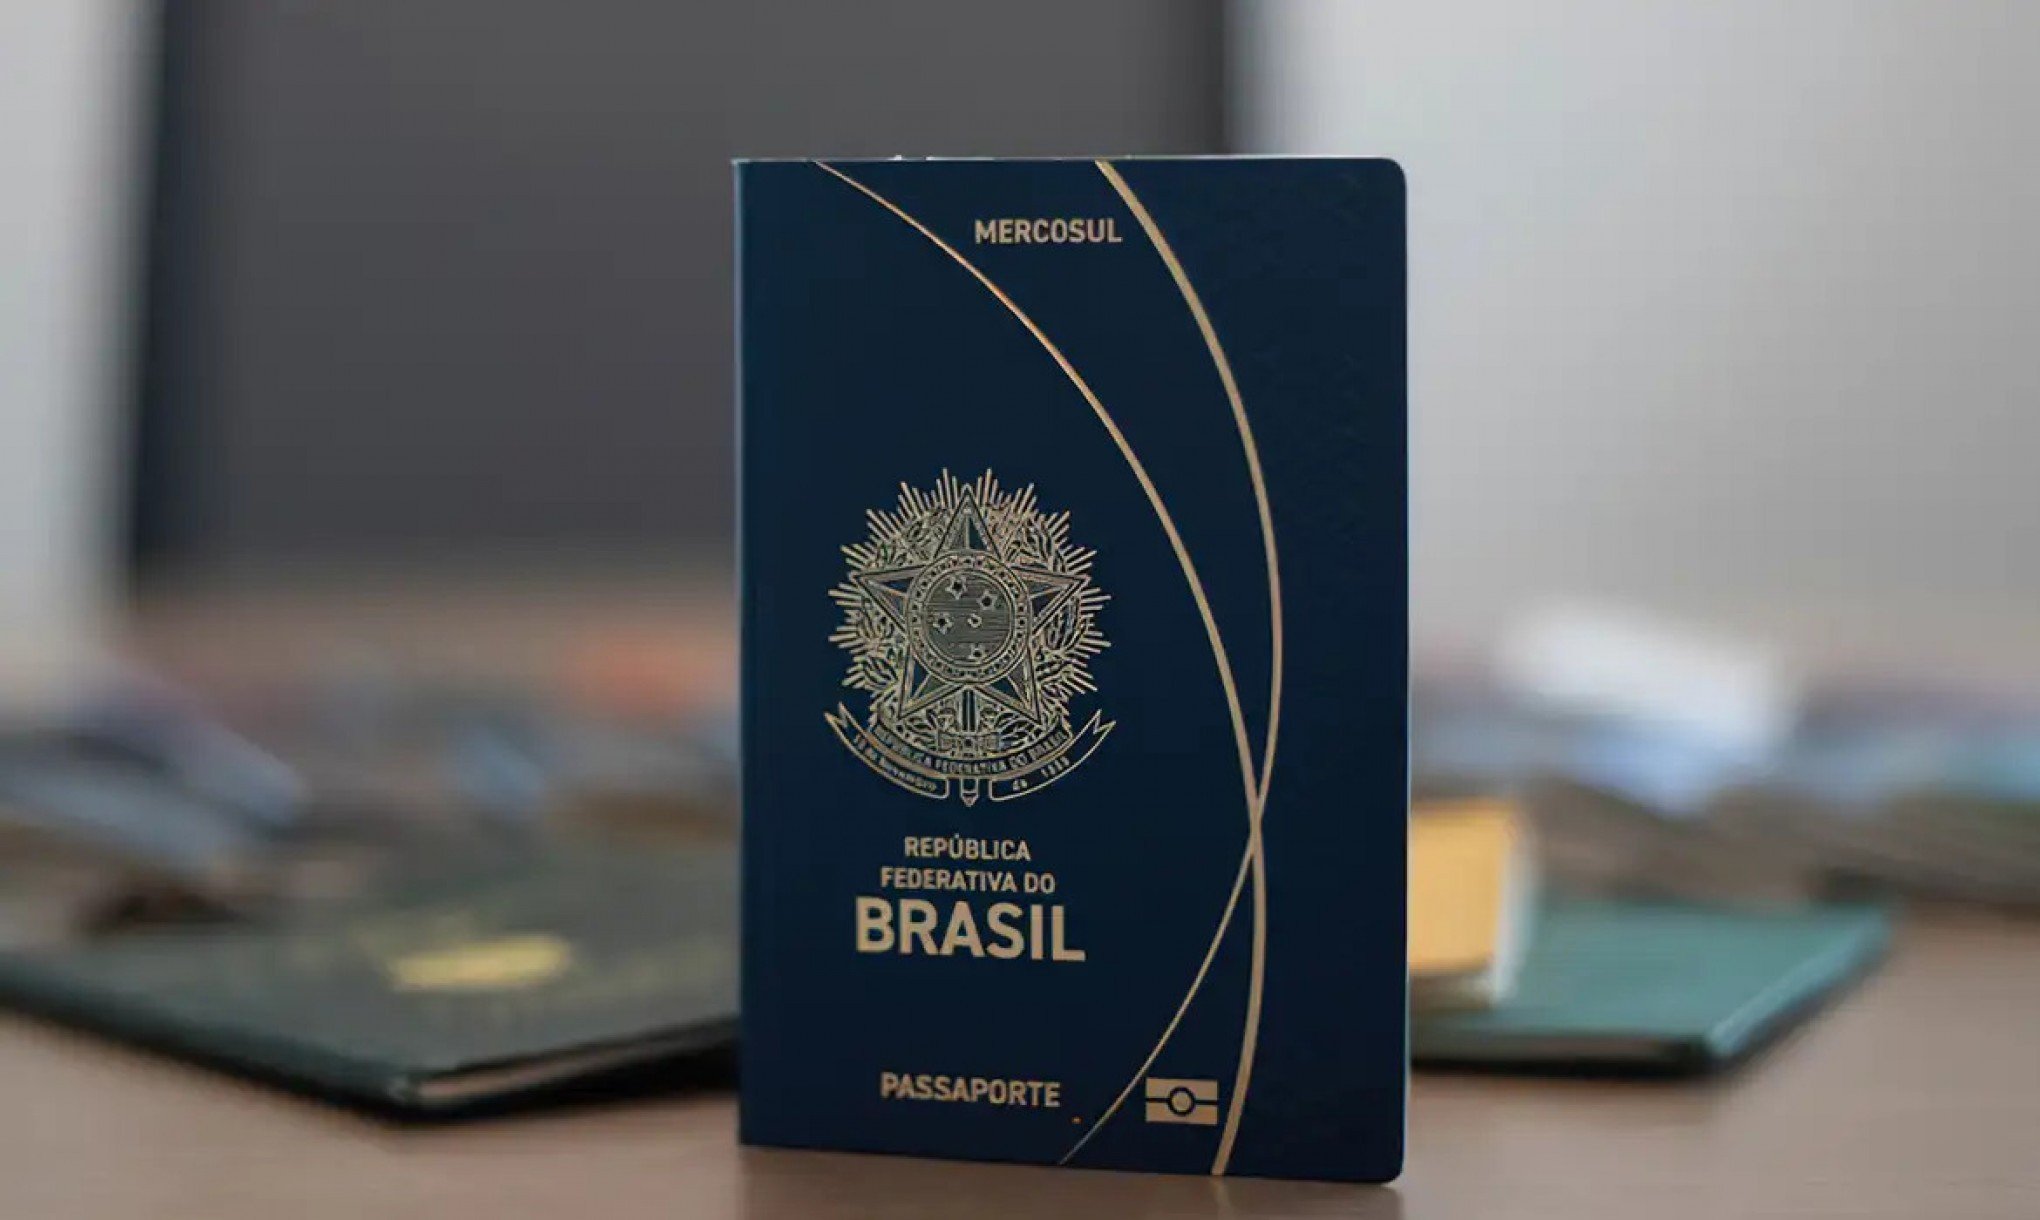 Agendamento on-line para emissão de passaporte é retomado após uma semana fora do ar